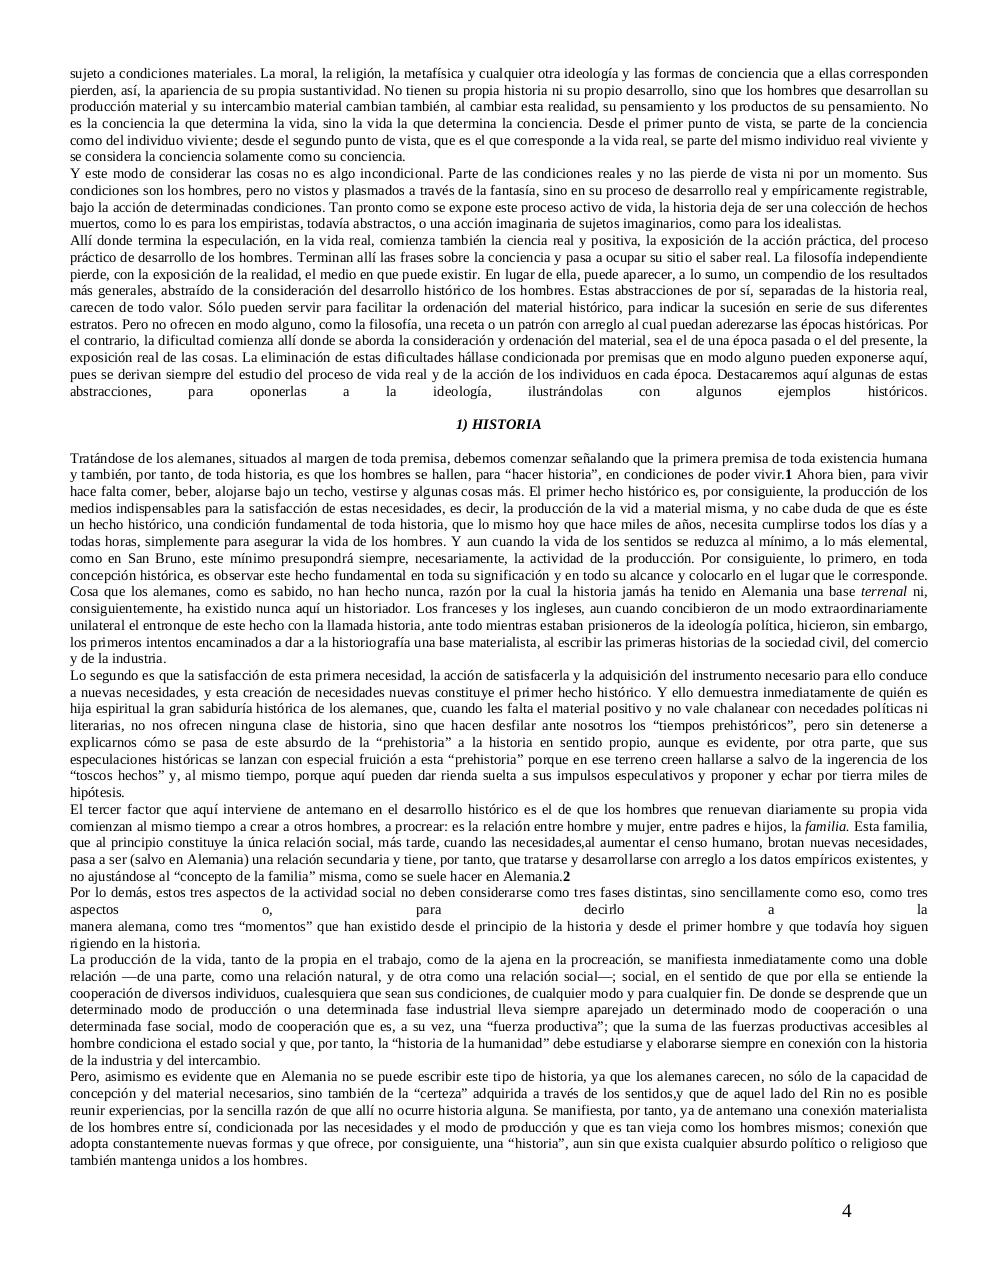 Karl Marx - La Ideologia Alemana.pdf - page 4/21